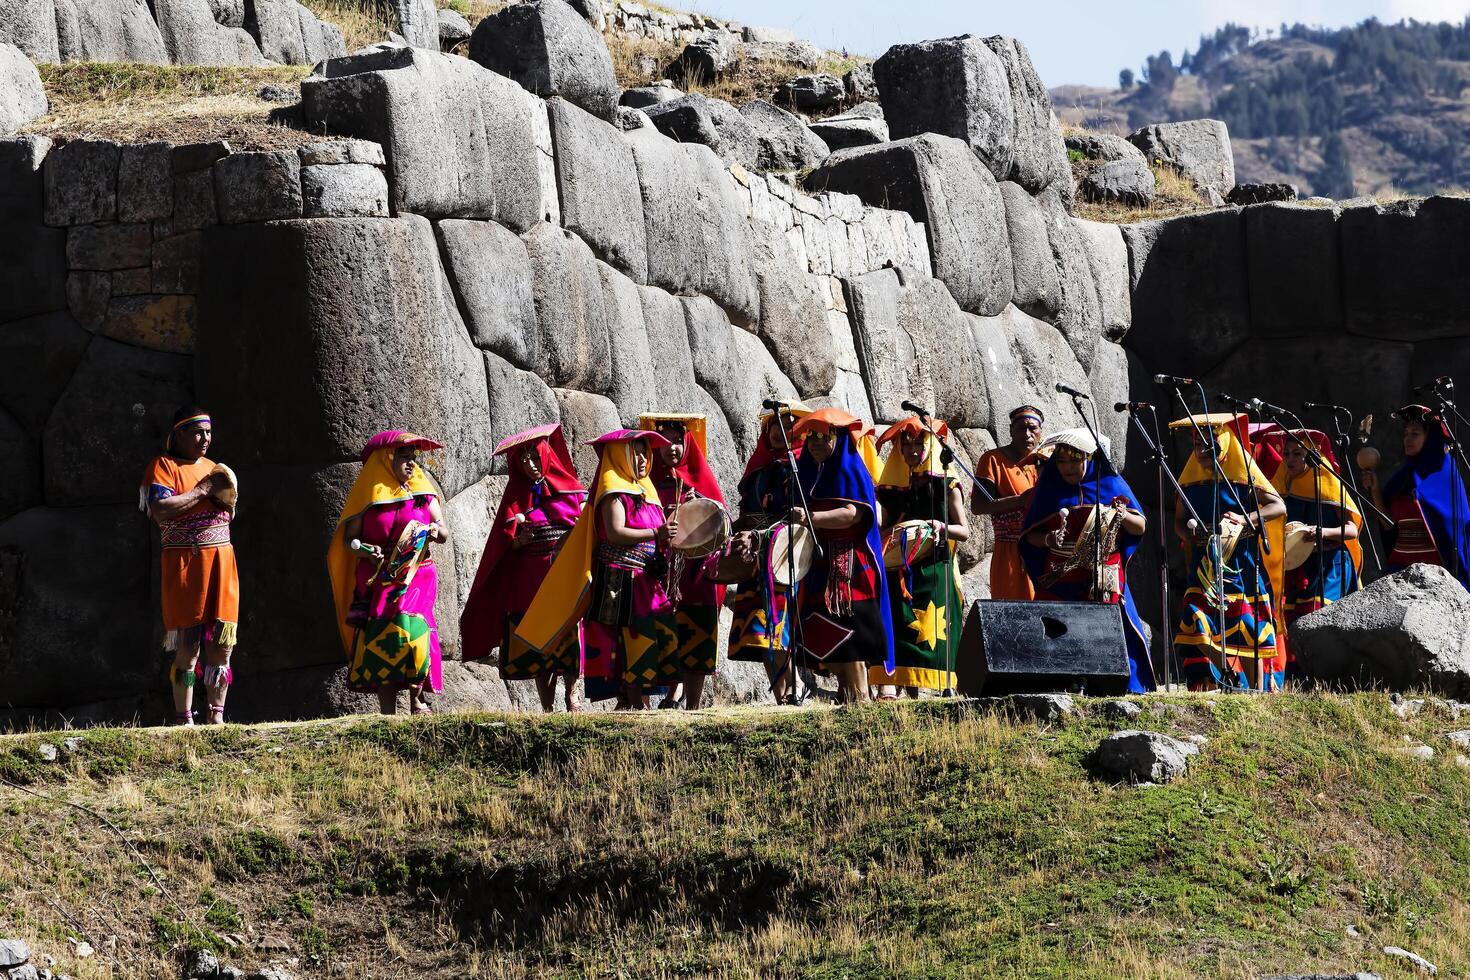 cusco, Peru, 2015 - - inti Raymi Festival Süd Amerika Musiker im Kostüm foto